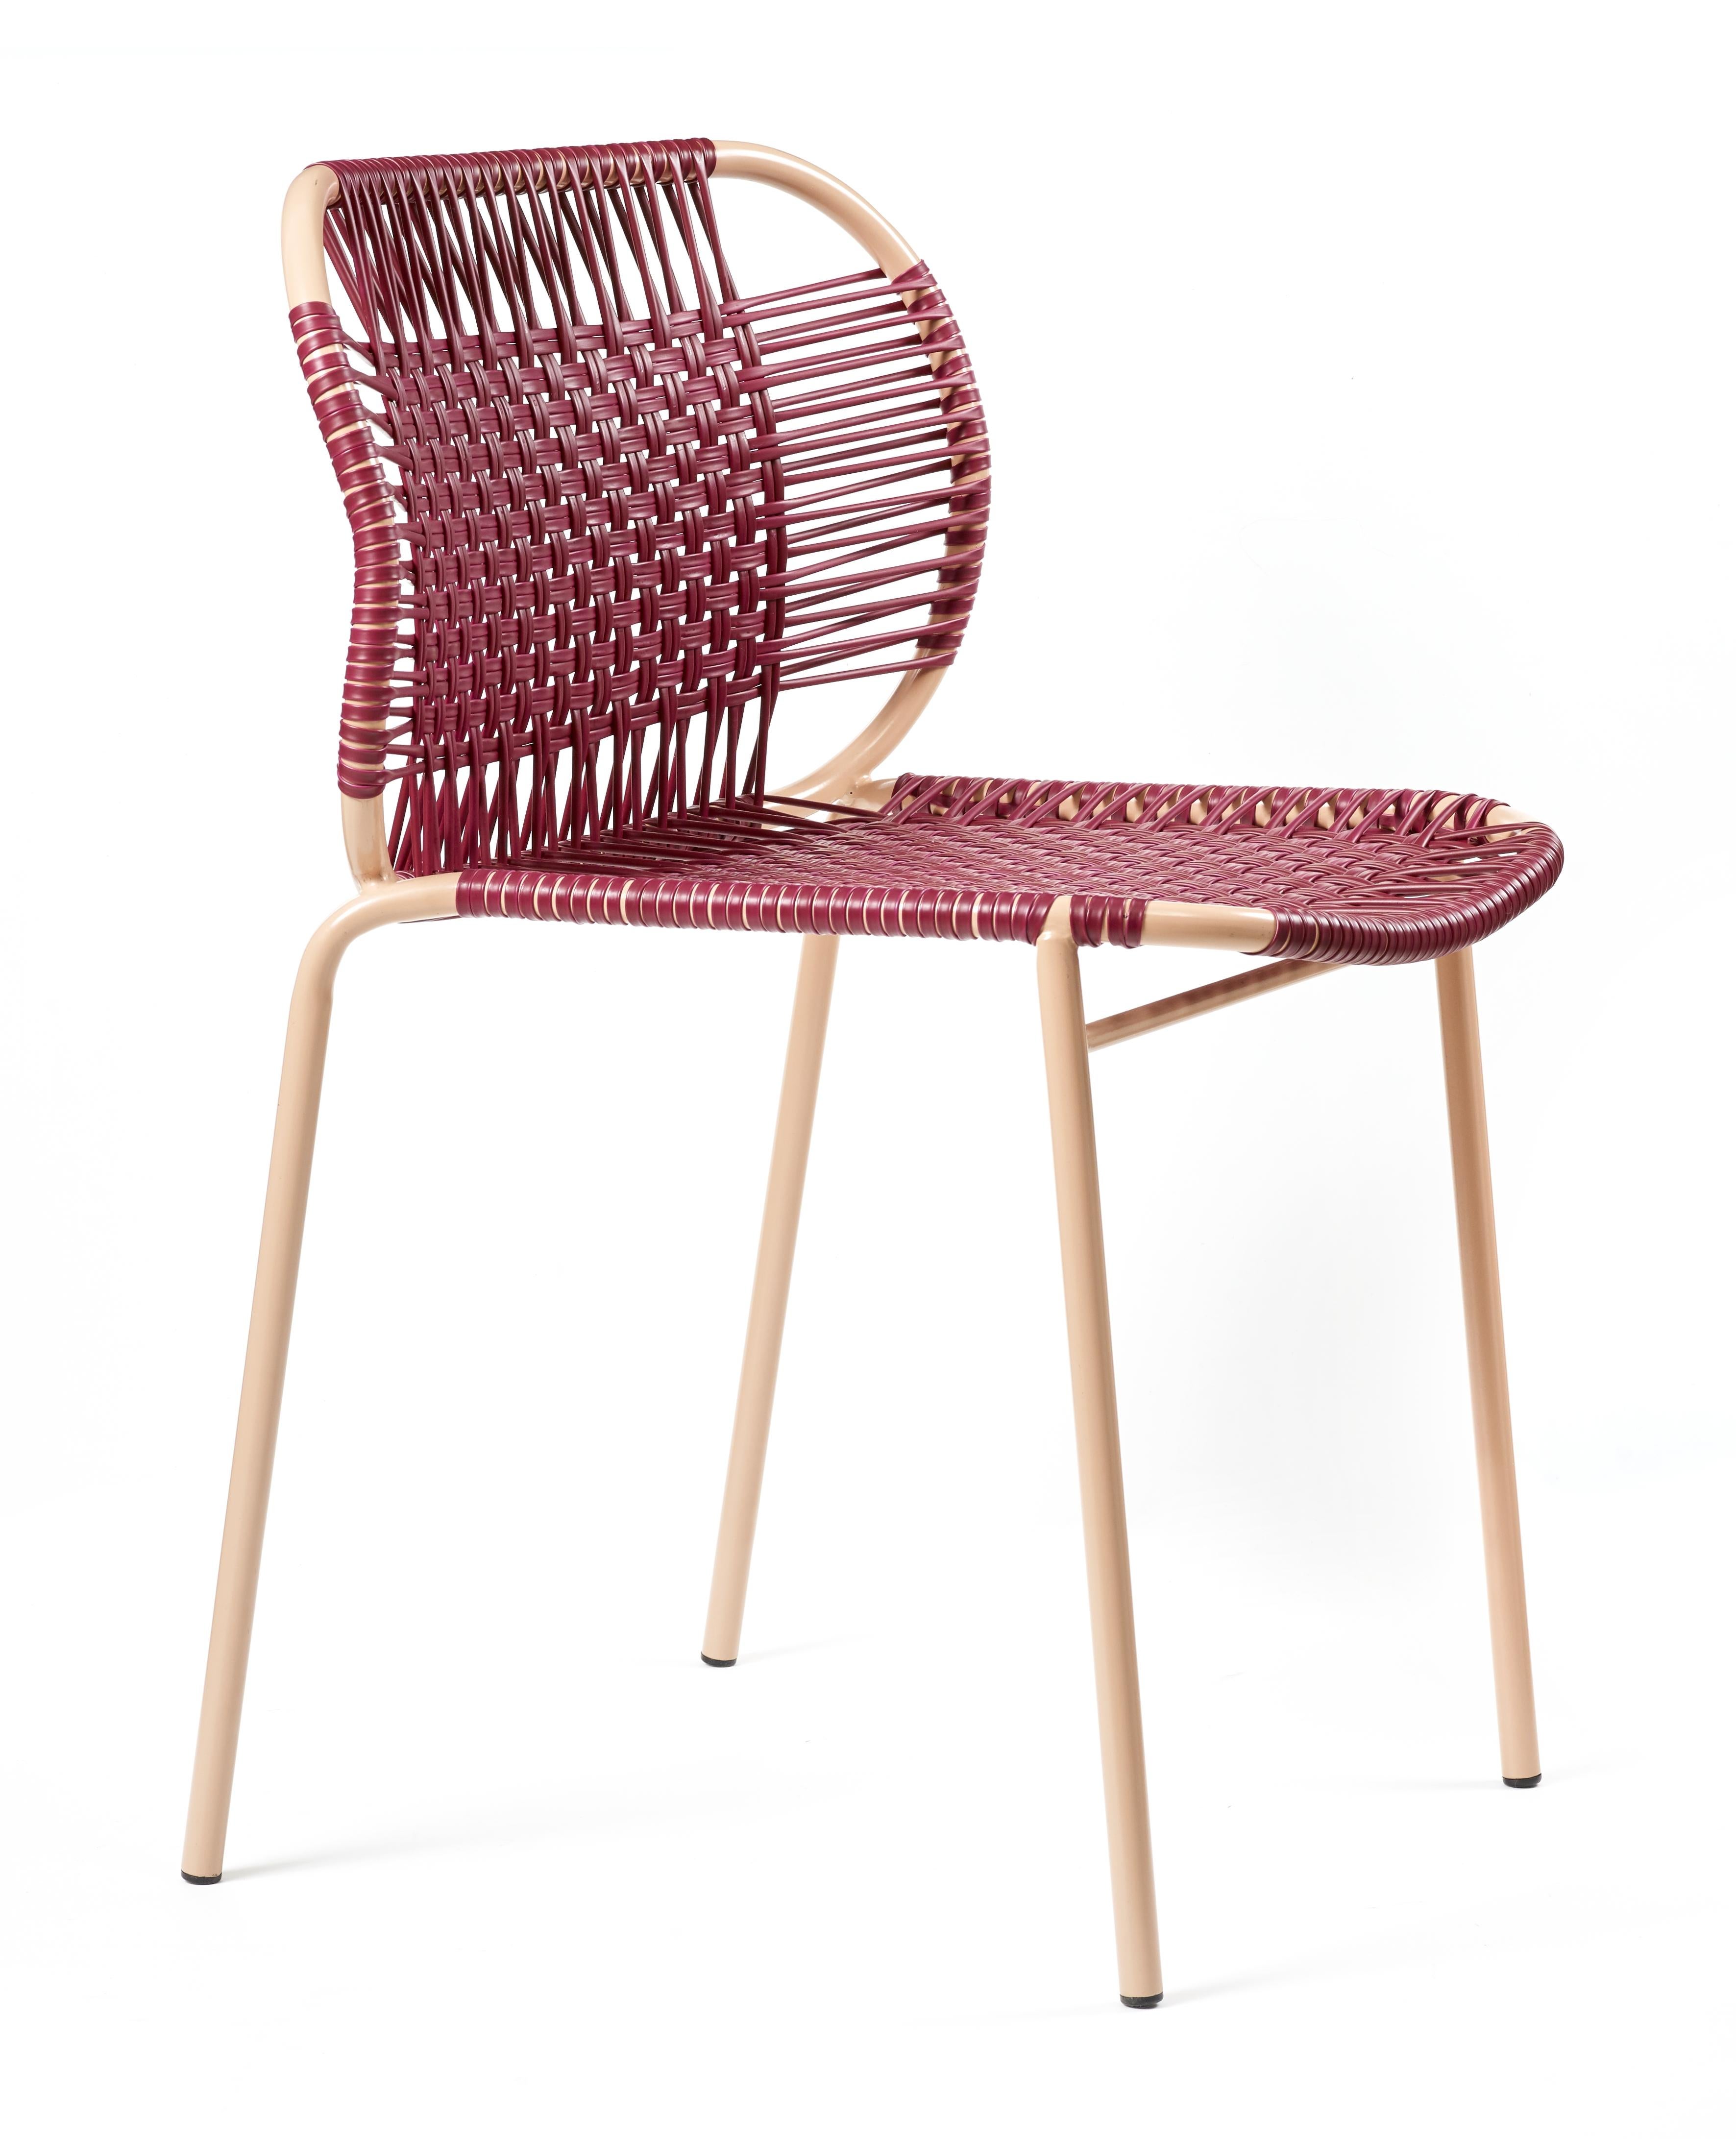 Lot de 4 chaises empilables Cielo violet par Sebastian Herkner
Matériaux : Cordes en PVC, cadre en acier peint par poudrage. 
Technique : fabriqué à partir de plastique recyclé et tissé par des artisans locaux à Carthagène, en Colombie.